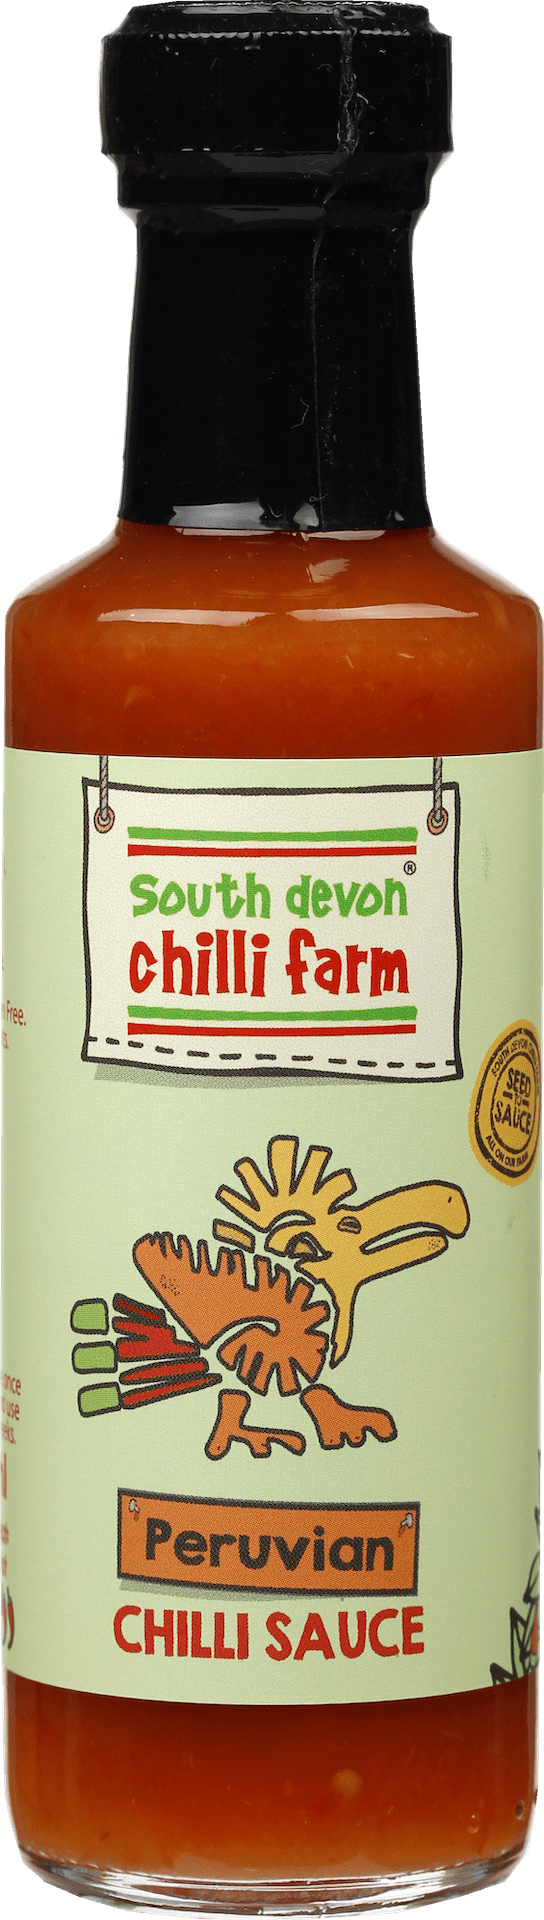 Peruvian Chilli Sauce 100ml South Devon Chilli Farm 